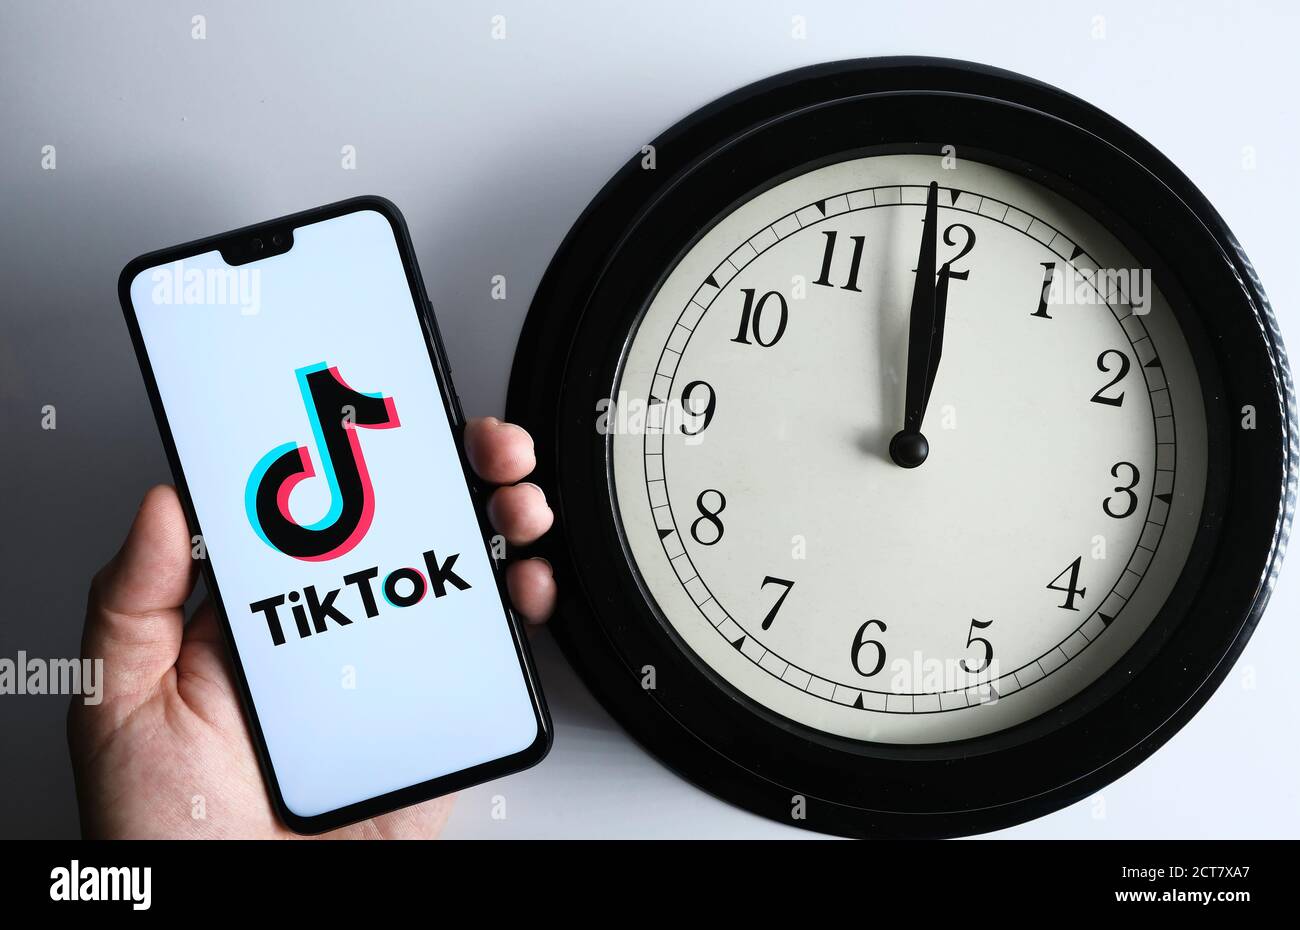 Stafford / Reino Unido - Septiembre 21 2020: Tiktok y el reloj, concepto.  Tiktok logotipo visto en el smartphone mantener en una mano y el reloj  analógico junto a ella Fotografía de stock - Alamy